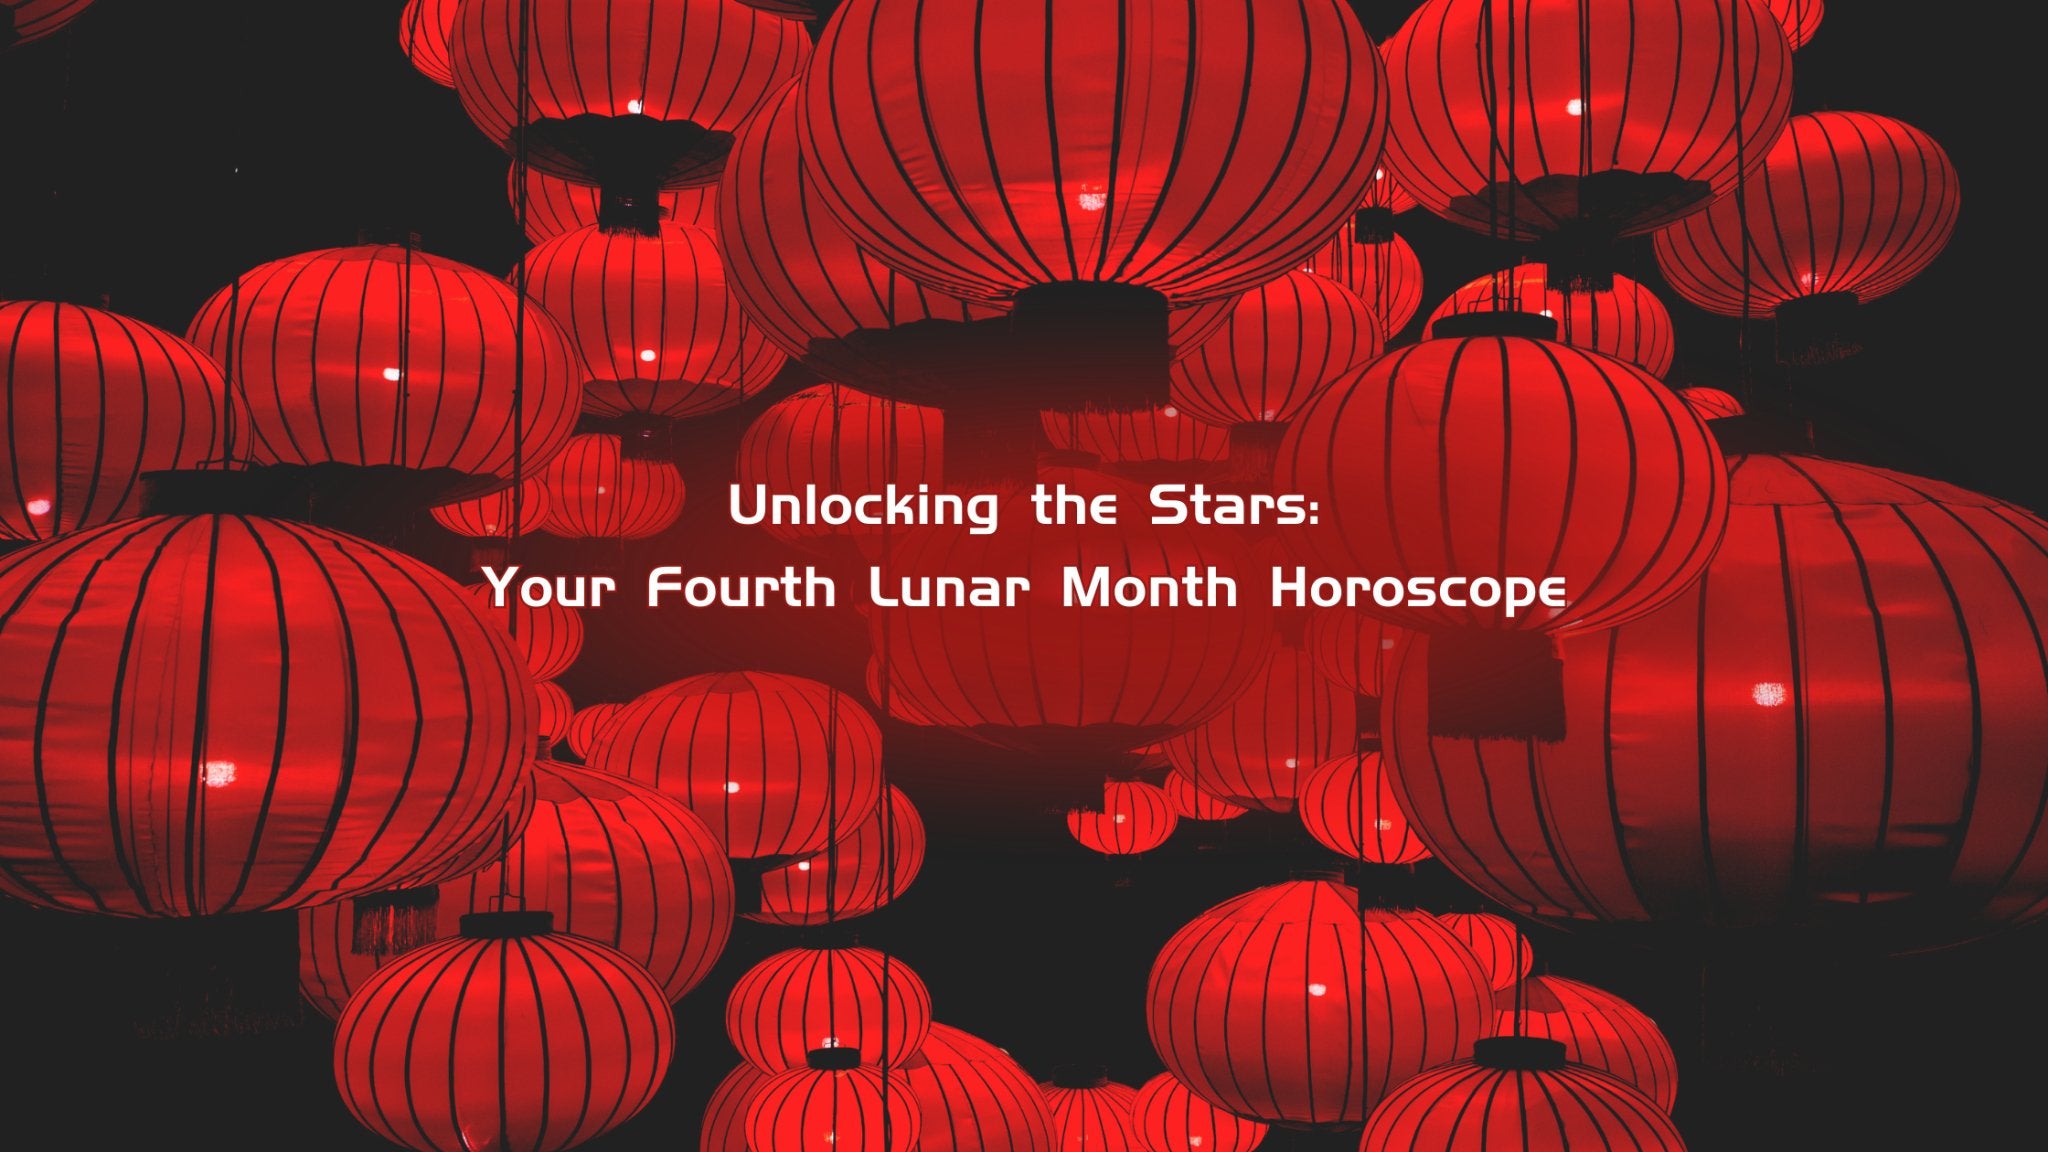 Desbloqueando las estrellas: tu horóscopo del cuarto mes lunar - Buddha Power Store